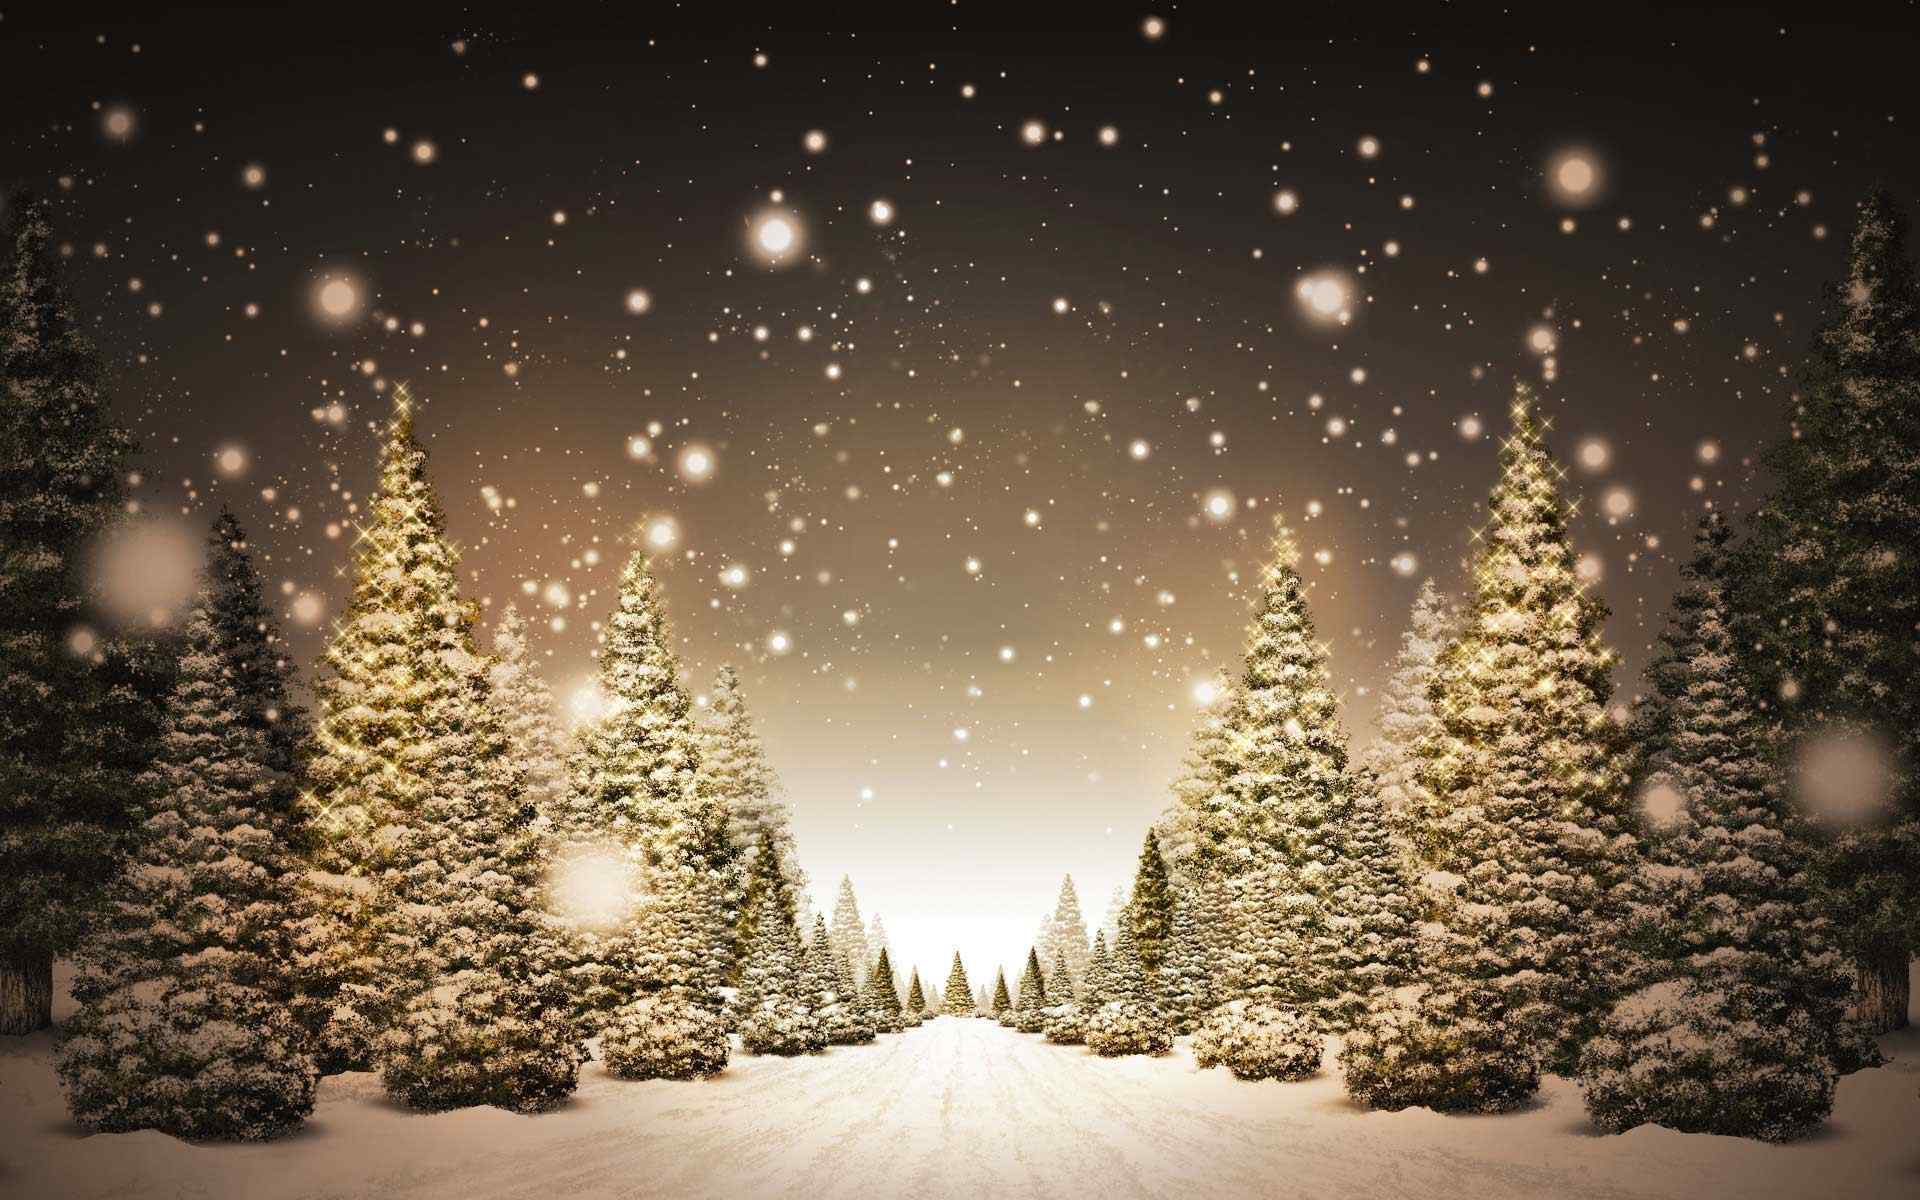 圣诞树雪景壁纸